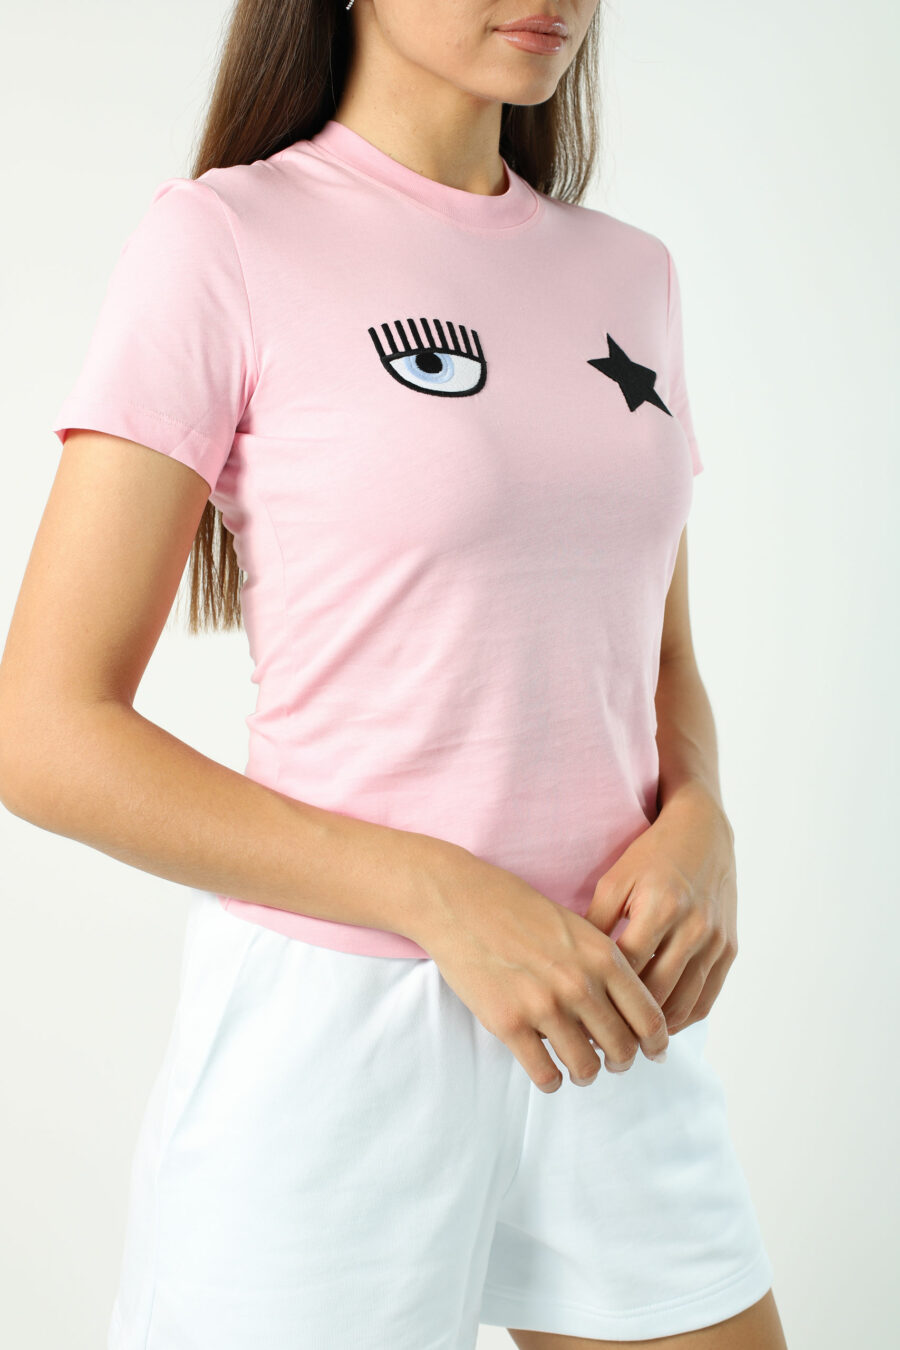 T-shirt cor-de-rosa com olho e estrela - Fotos 2695